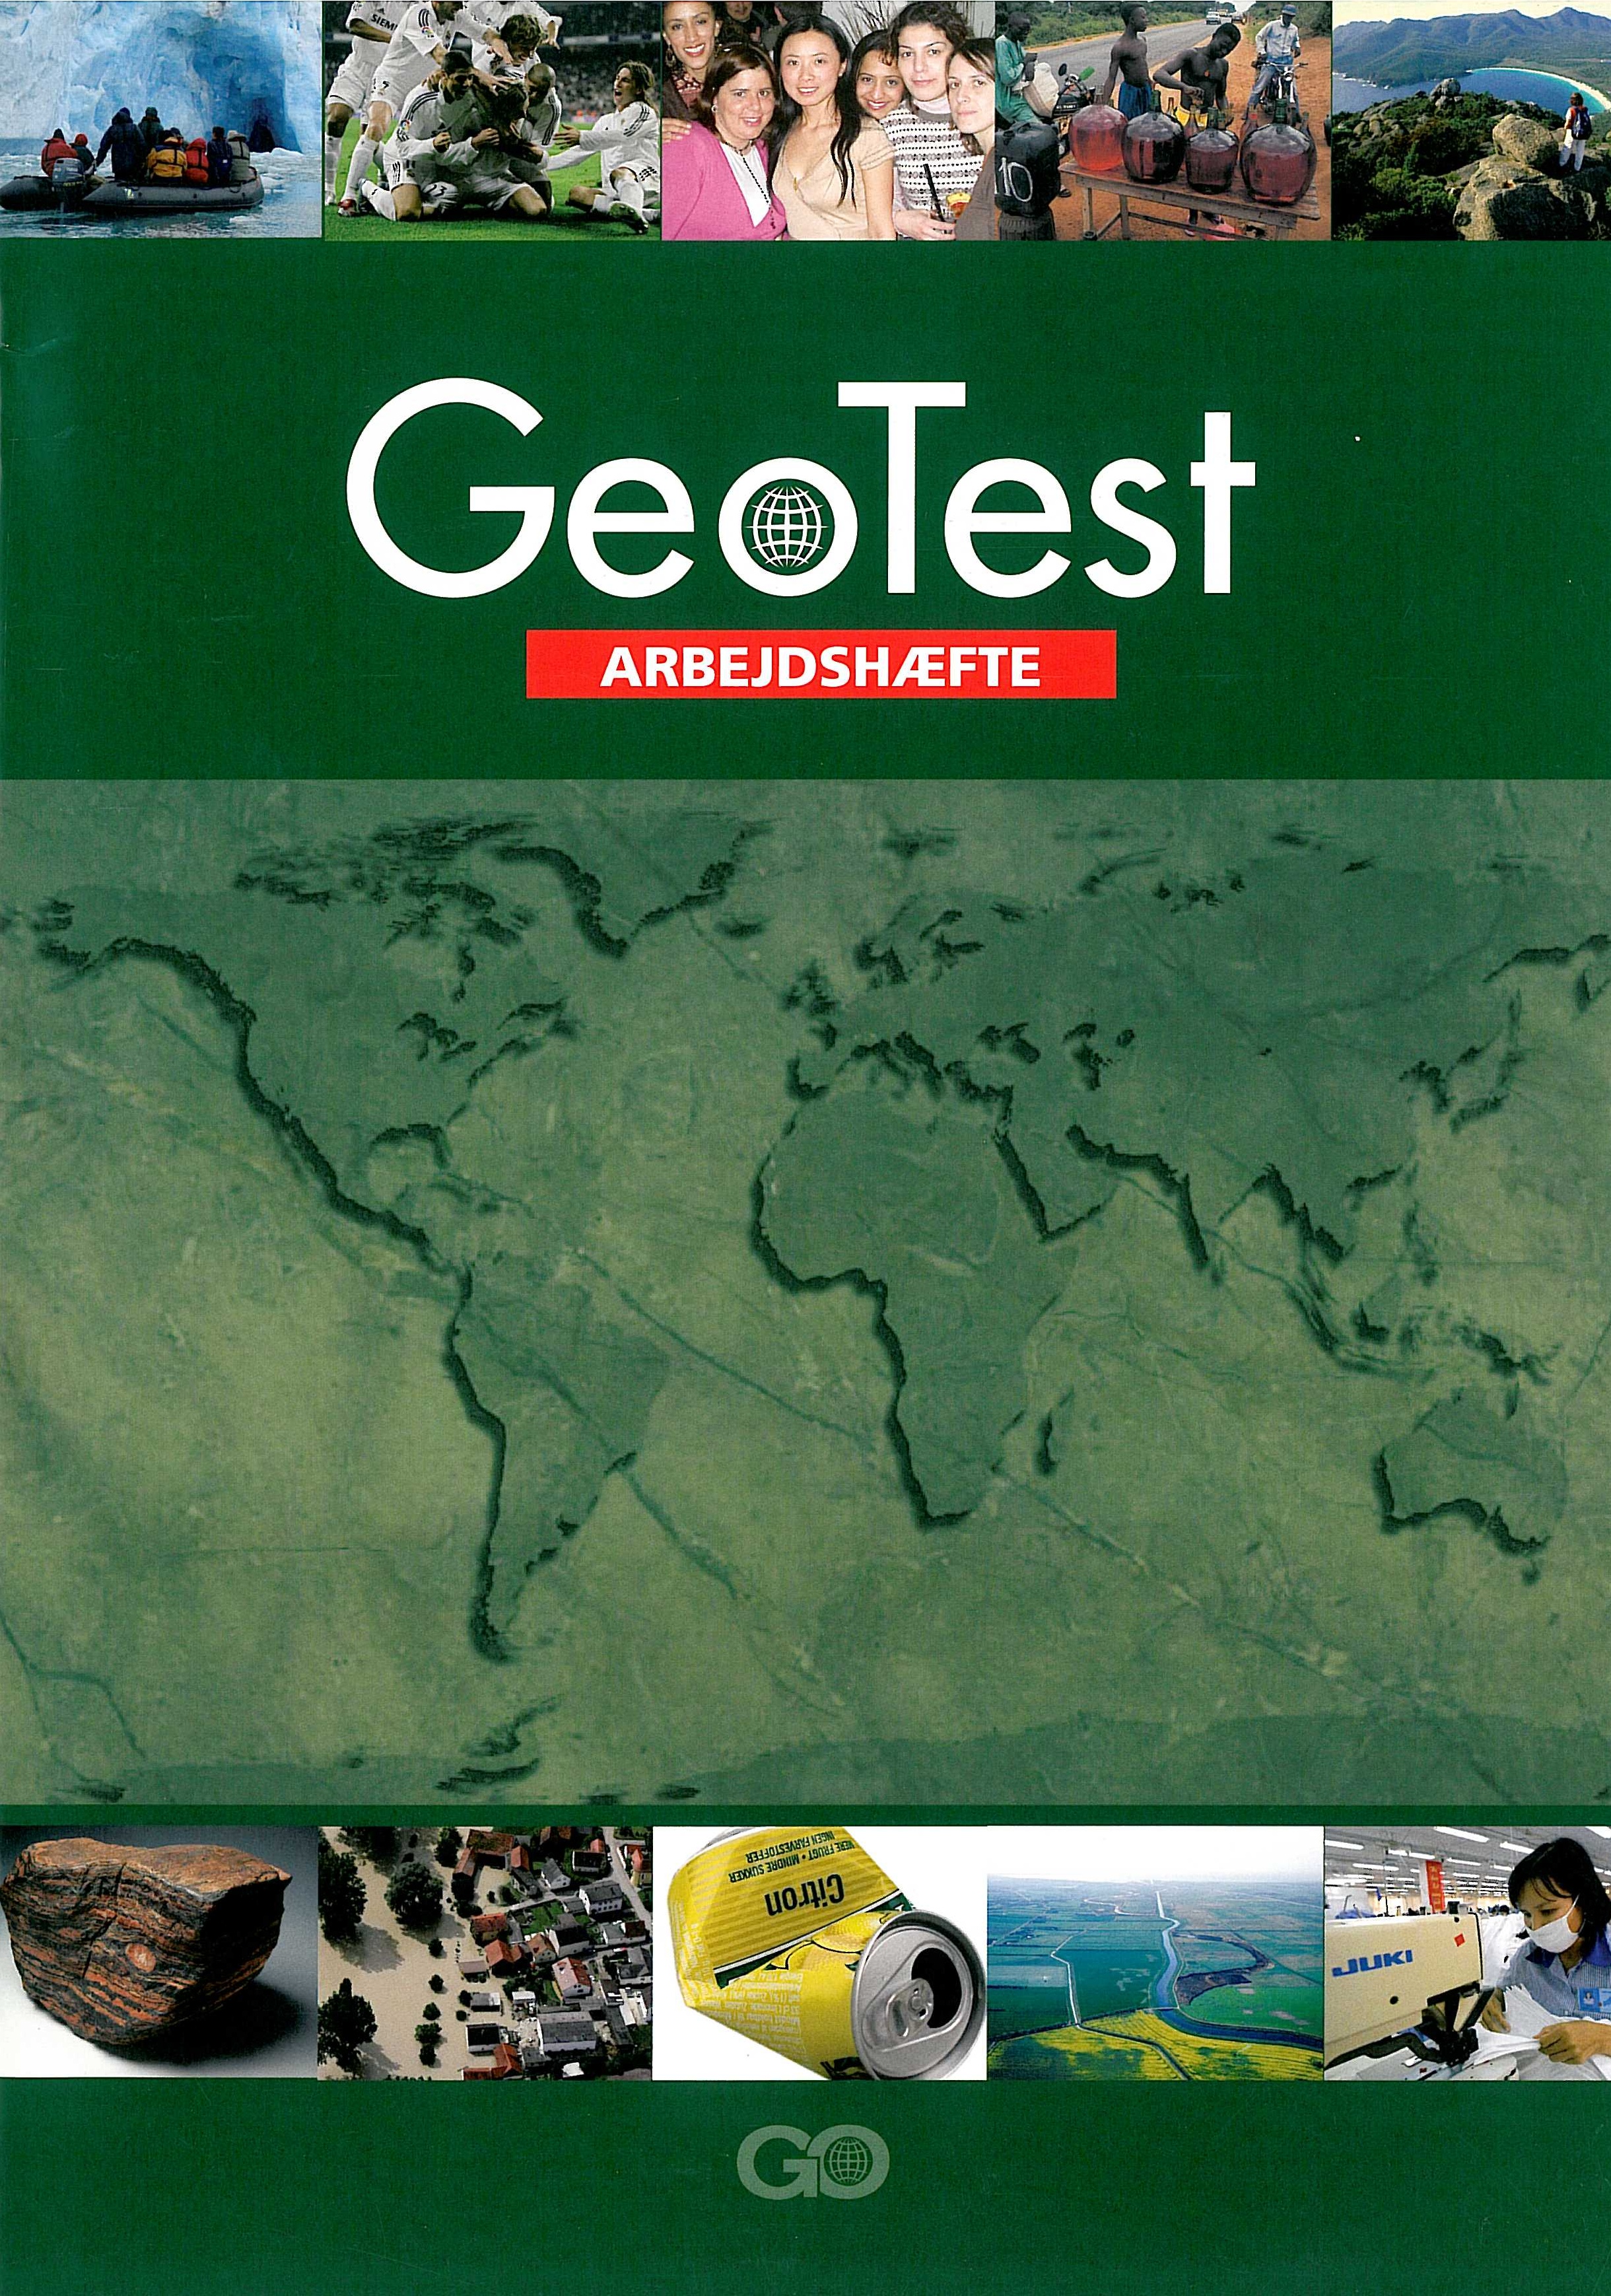 Geotest Arbejdshæfte er en del af et undervisningssystem til grundskolens undervisning i geografi i 7. til 9. klasse.